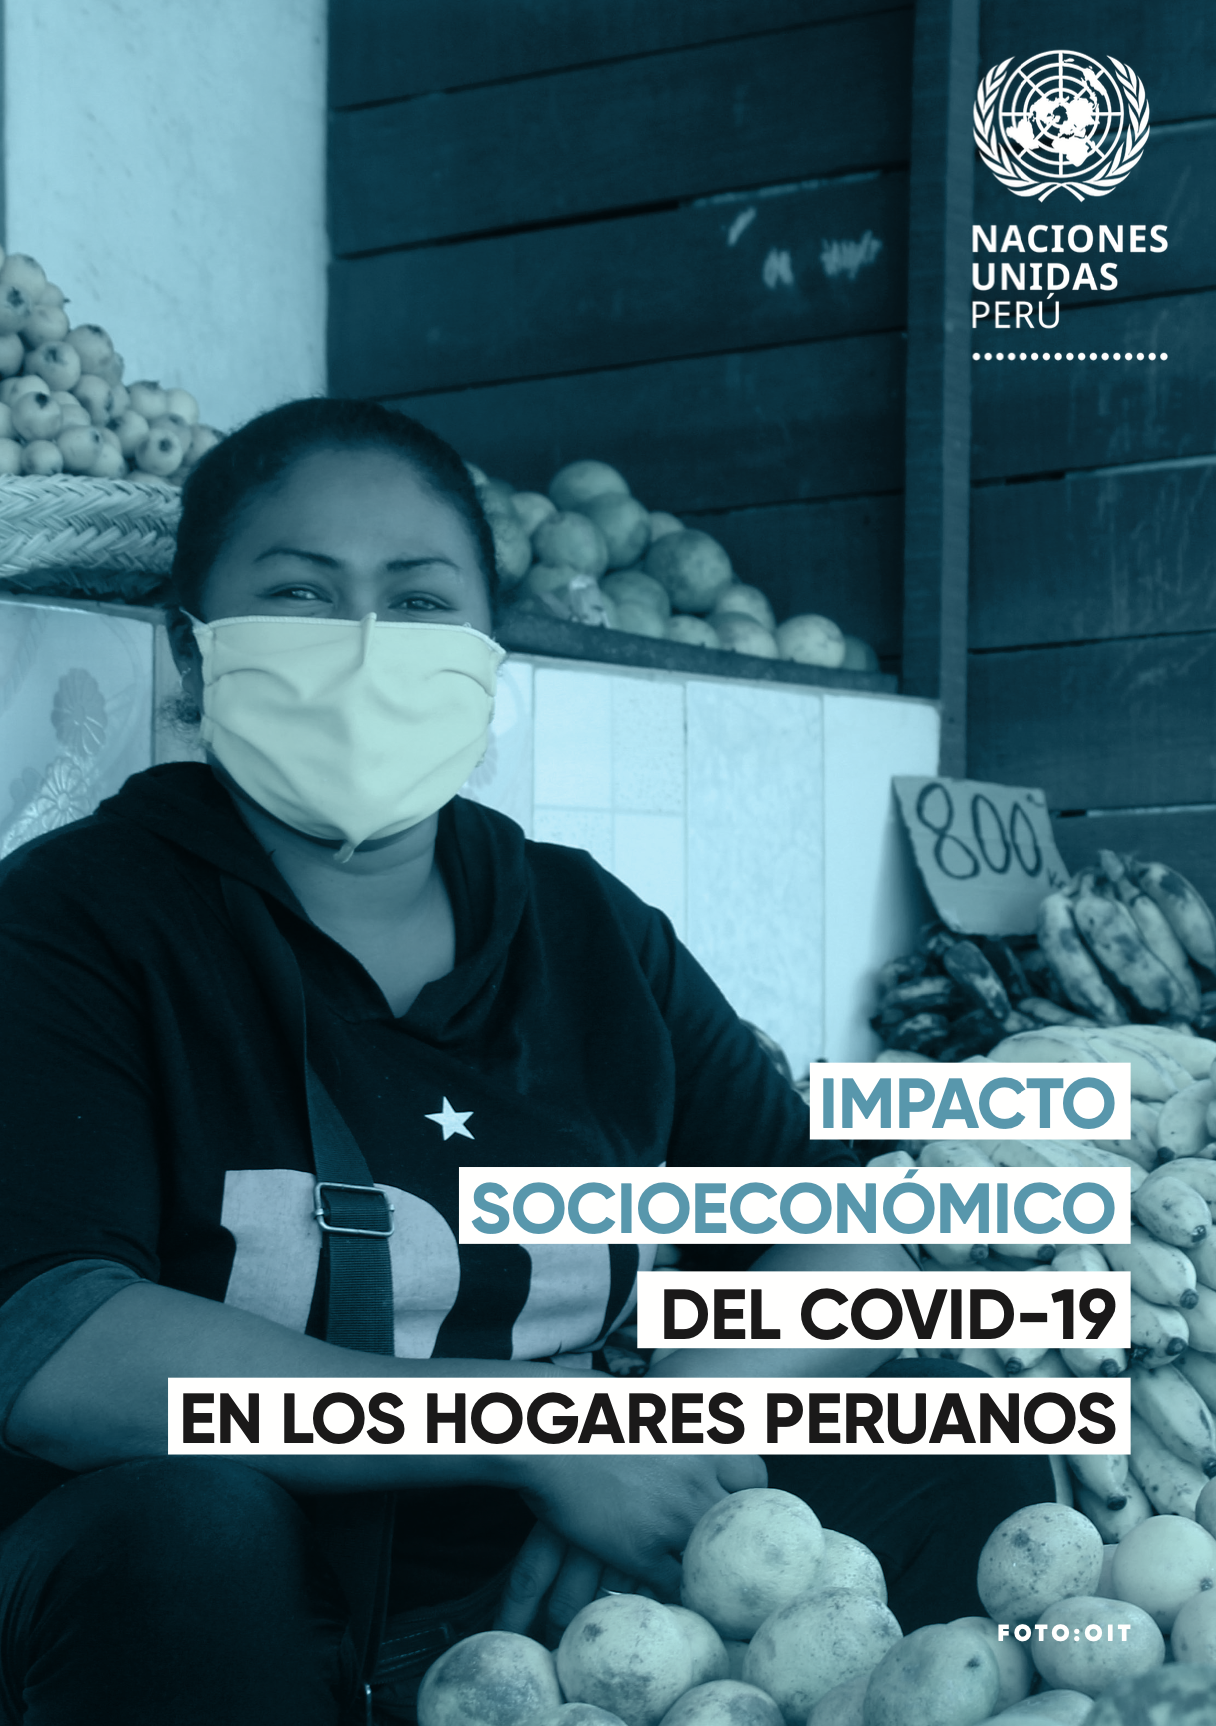 Impacto socioeconómico del COVID-19 en los hogares peruanos